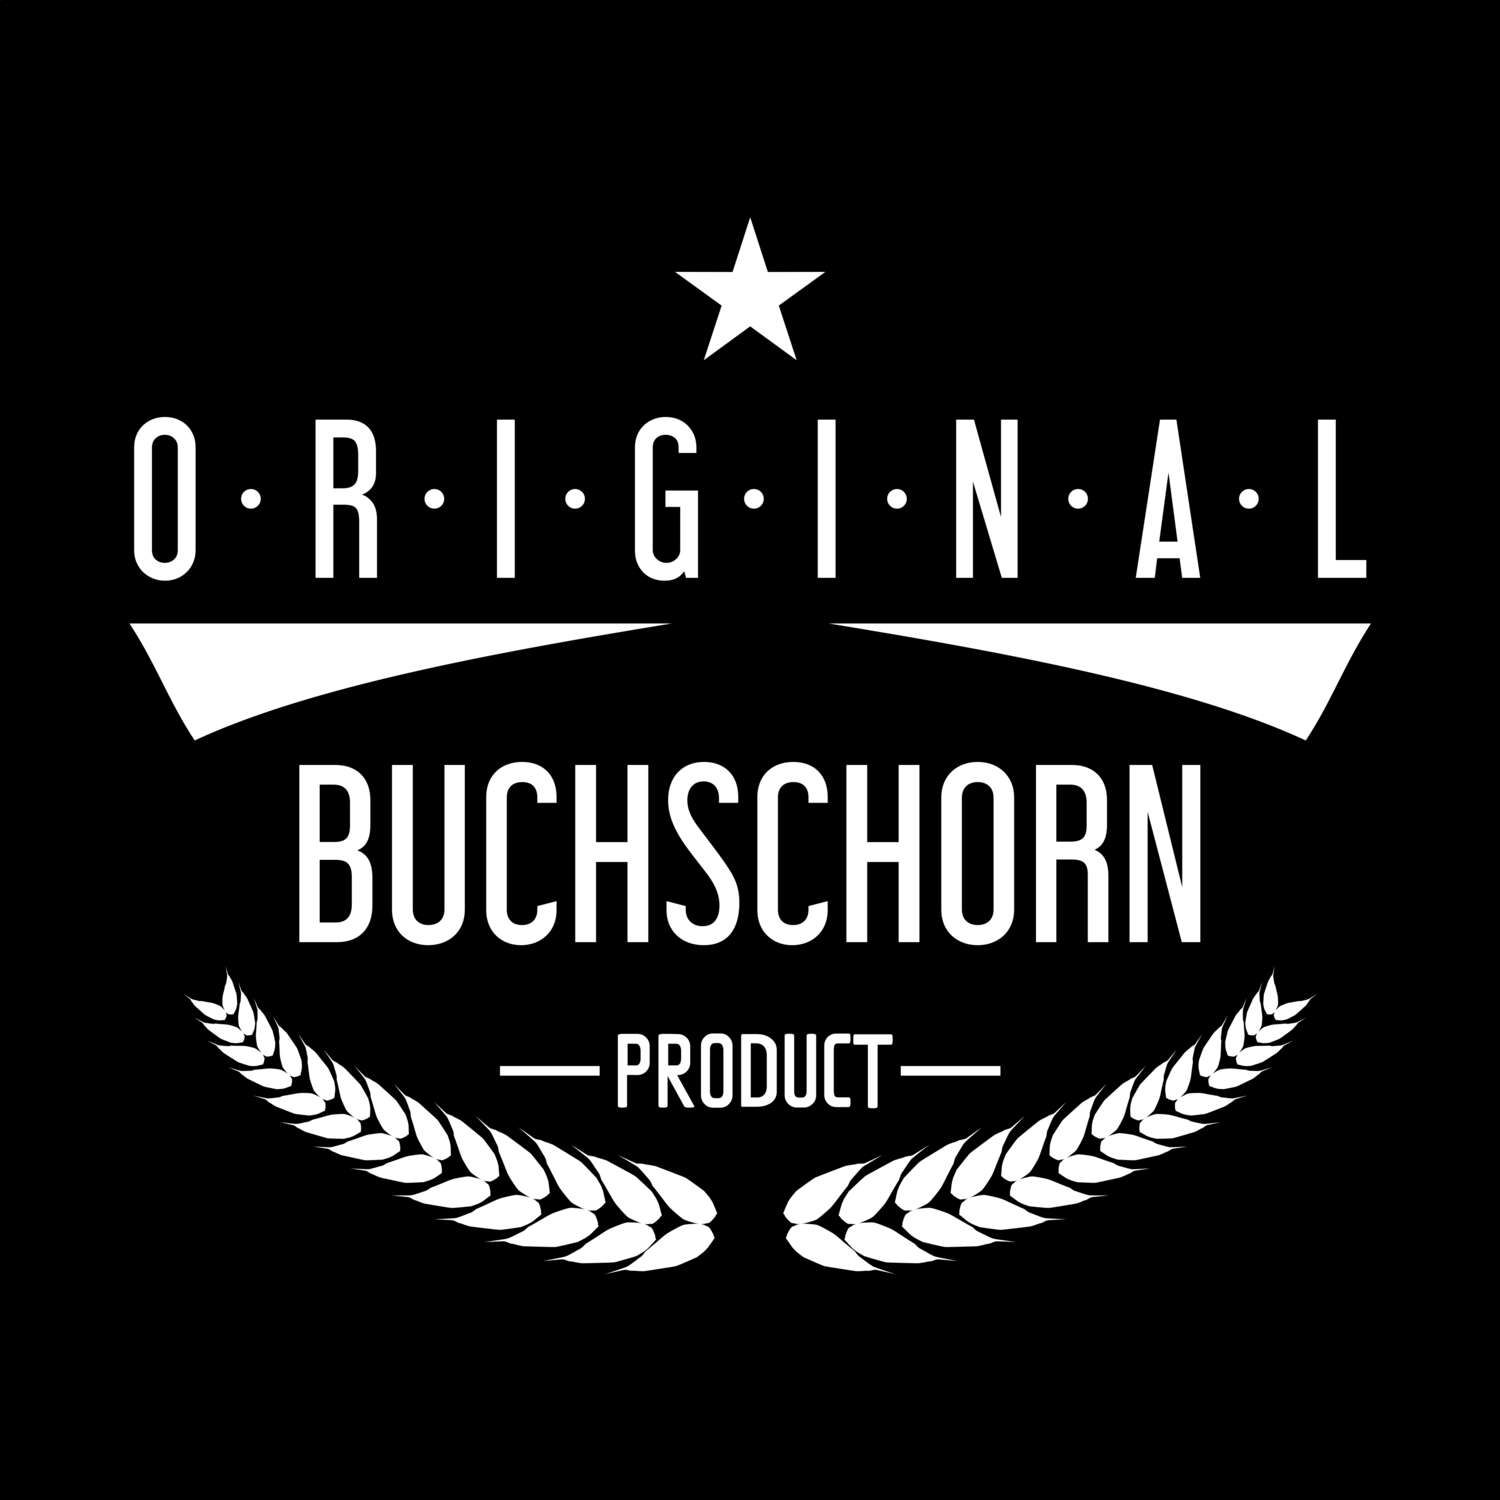 Buchschorn T-Shirt »Original Product«